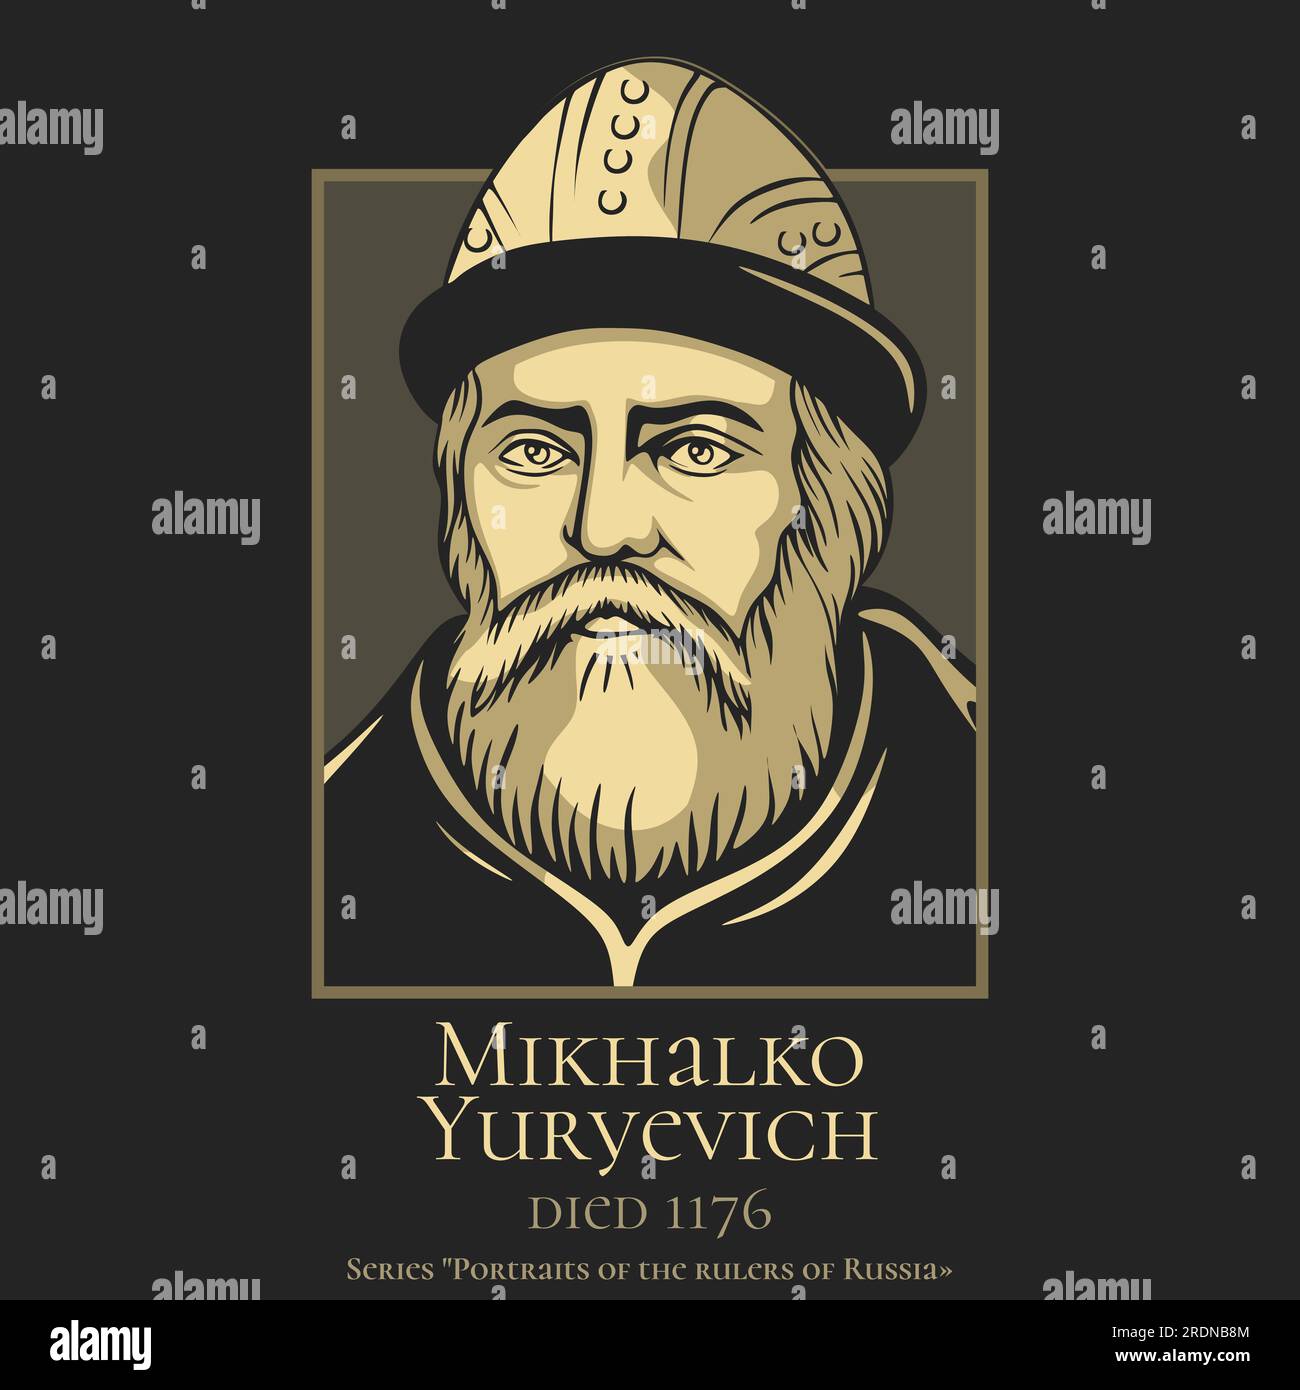 Porträt der Herrscher Russlands. Mikhalko Jurjewitsch (verstorben 1176), Prinz von Torchesk, Wladimir und Suzdal und Großfürst von Kiew. Stock Vektor